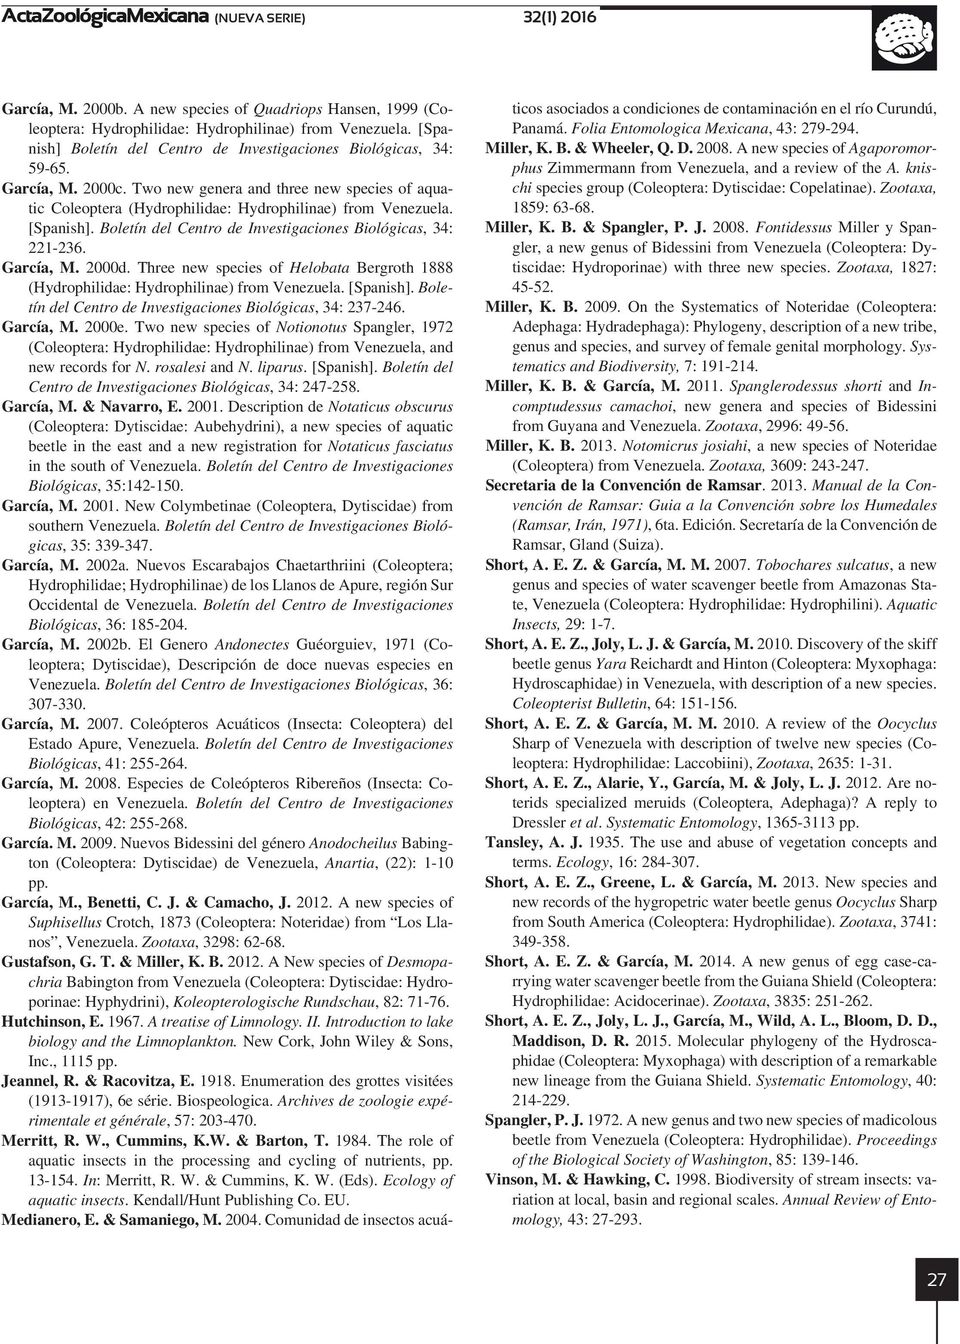 [Spanish]. Boletín del Centro de Investigaciones Biológicas, 34: 221-236. García, M. 2000d. Three new species of Helobata Bergroth 1888 (Hydrophilidae: Hydrophilinae) from Venezuela. [Spanish].